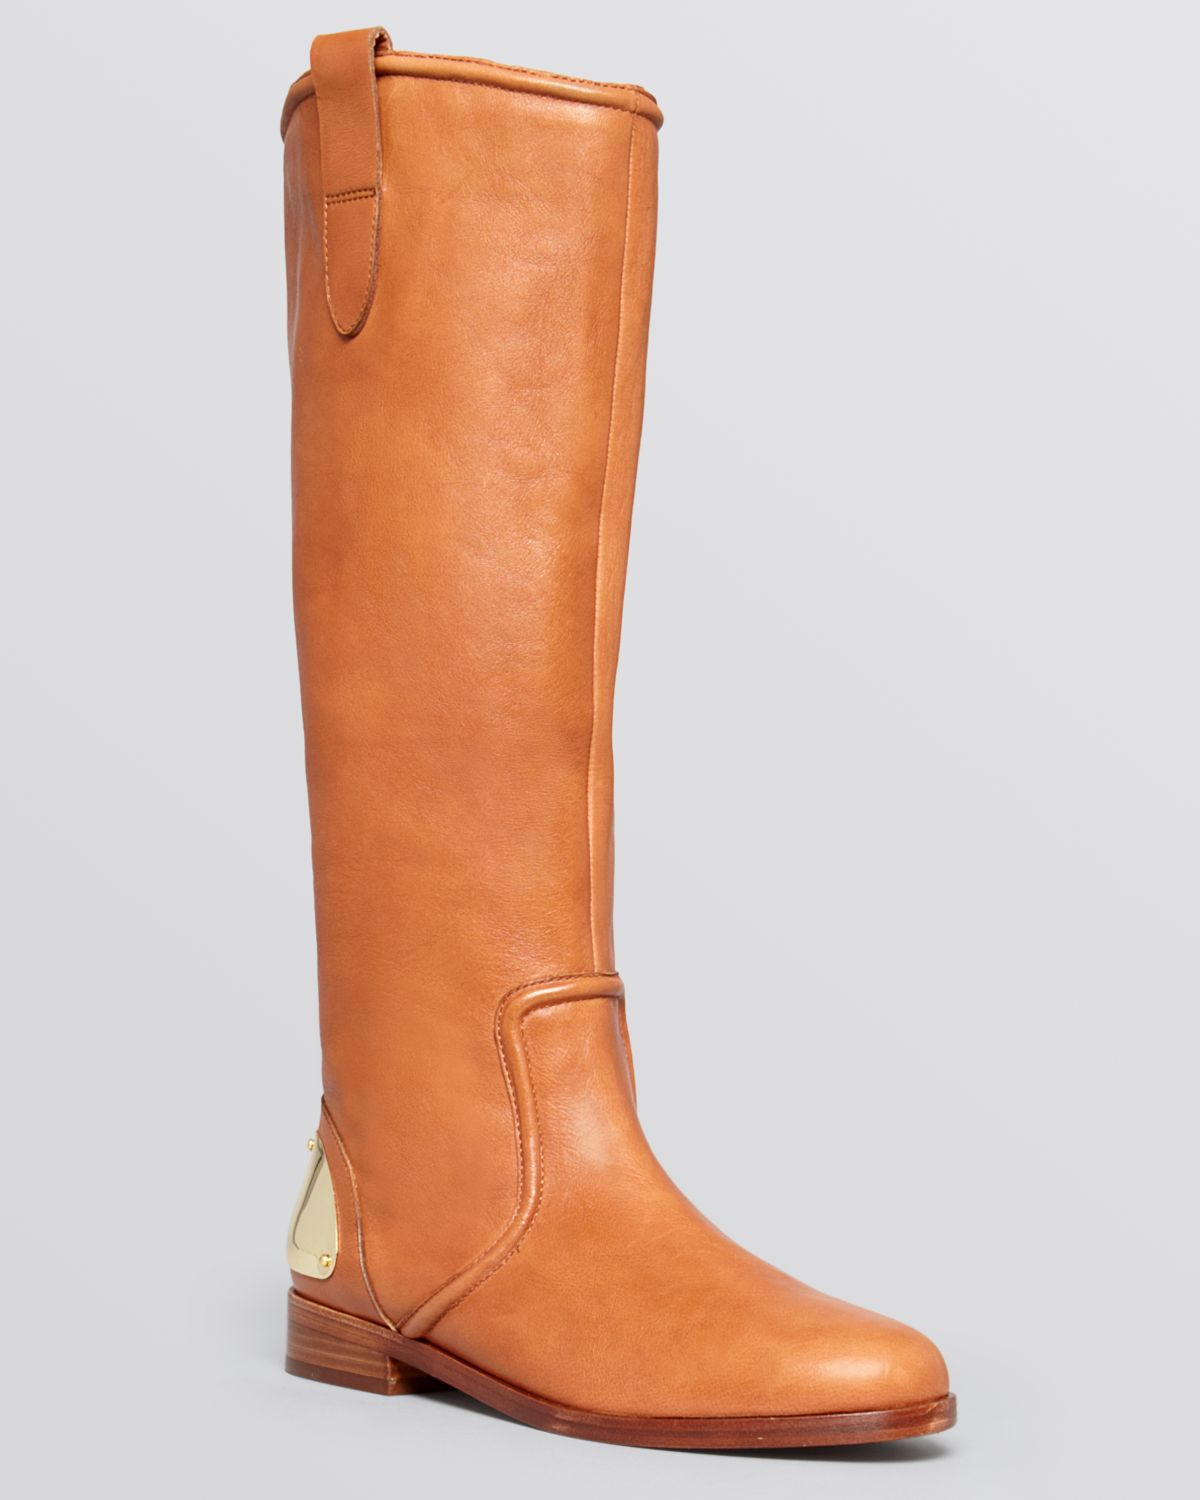 Lyst - Lauren By Ralph Lauren Riding Boots - Parker Side Zip in Brown